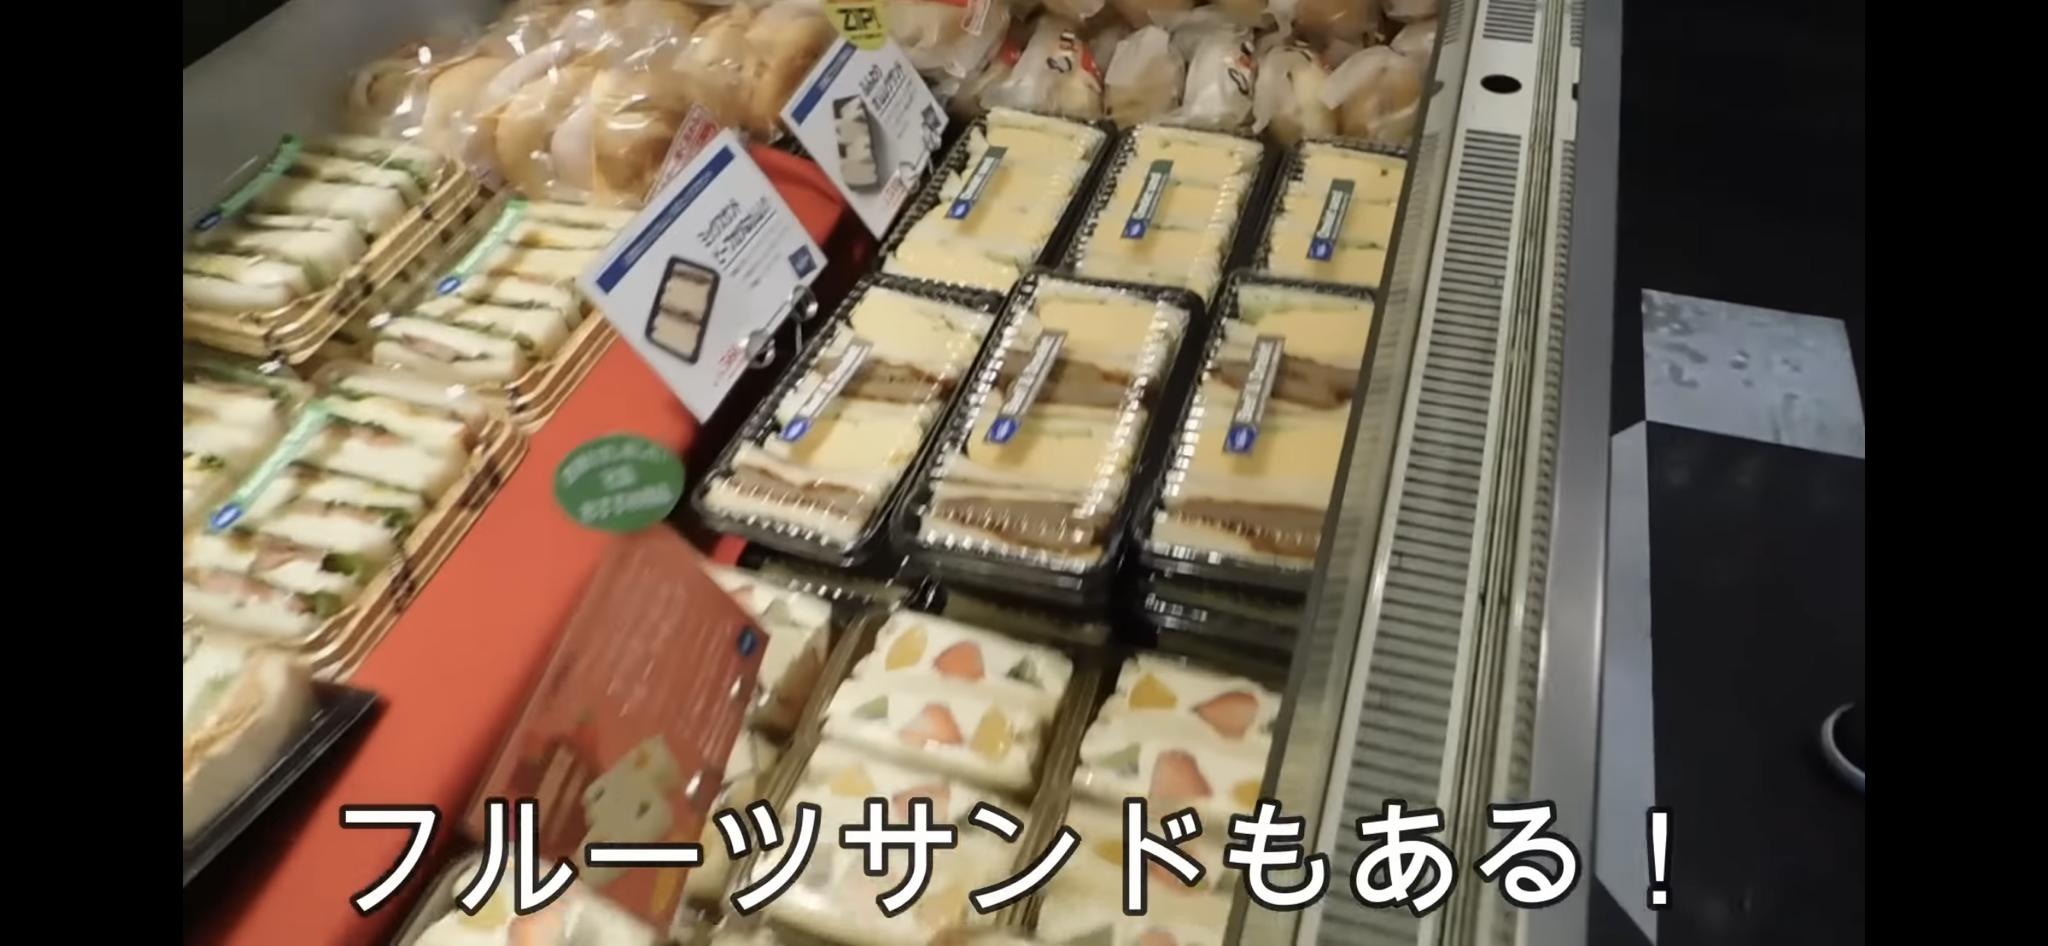 【画像】イギリス人様、日本のフルーツサンドイッチを食べるwww